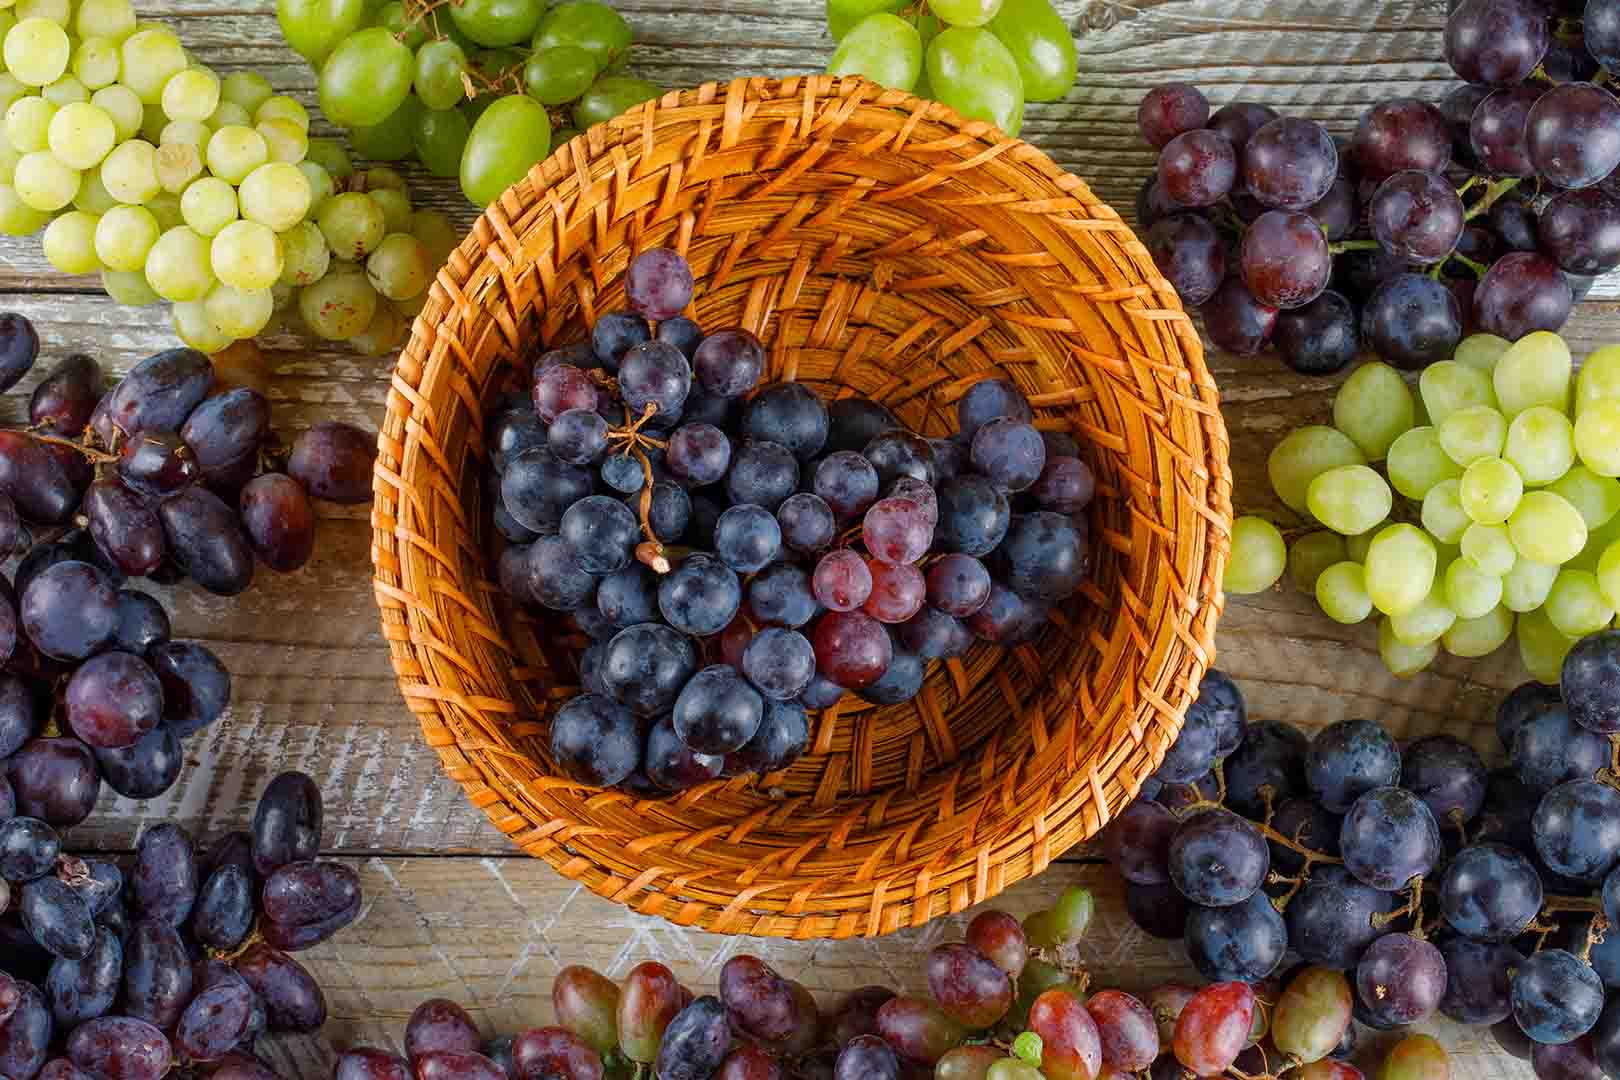 Manfaat buah anggur hitam